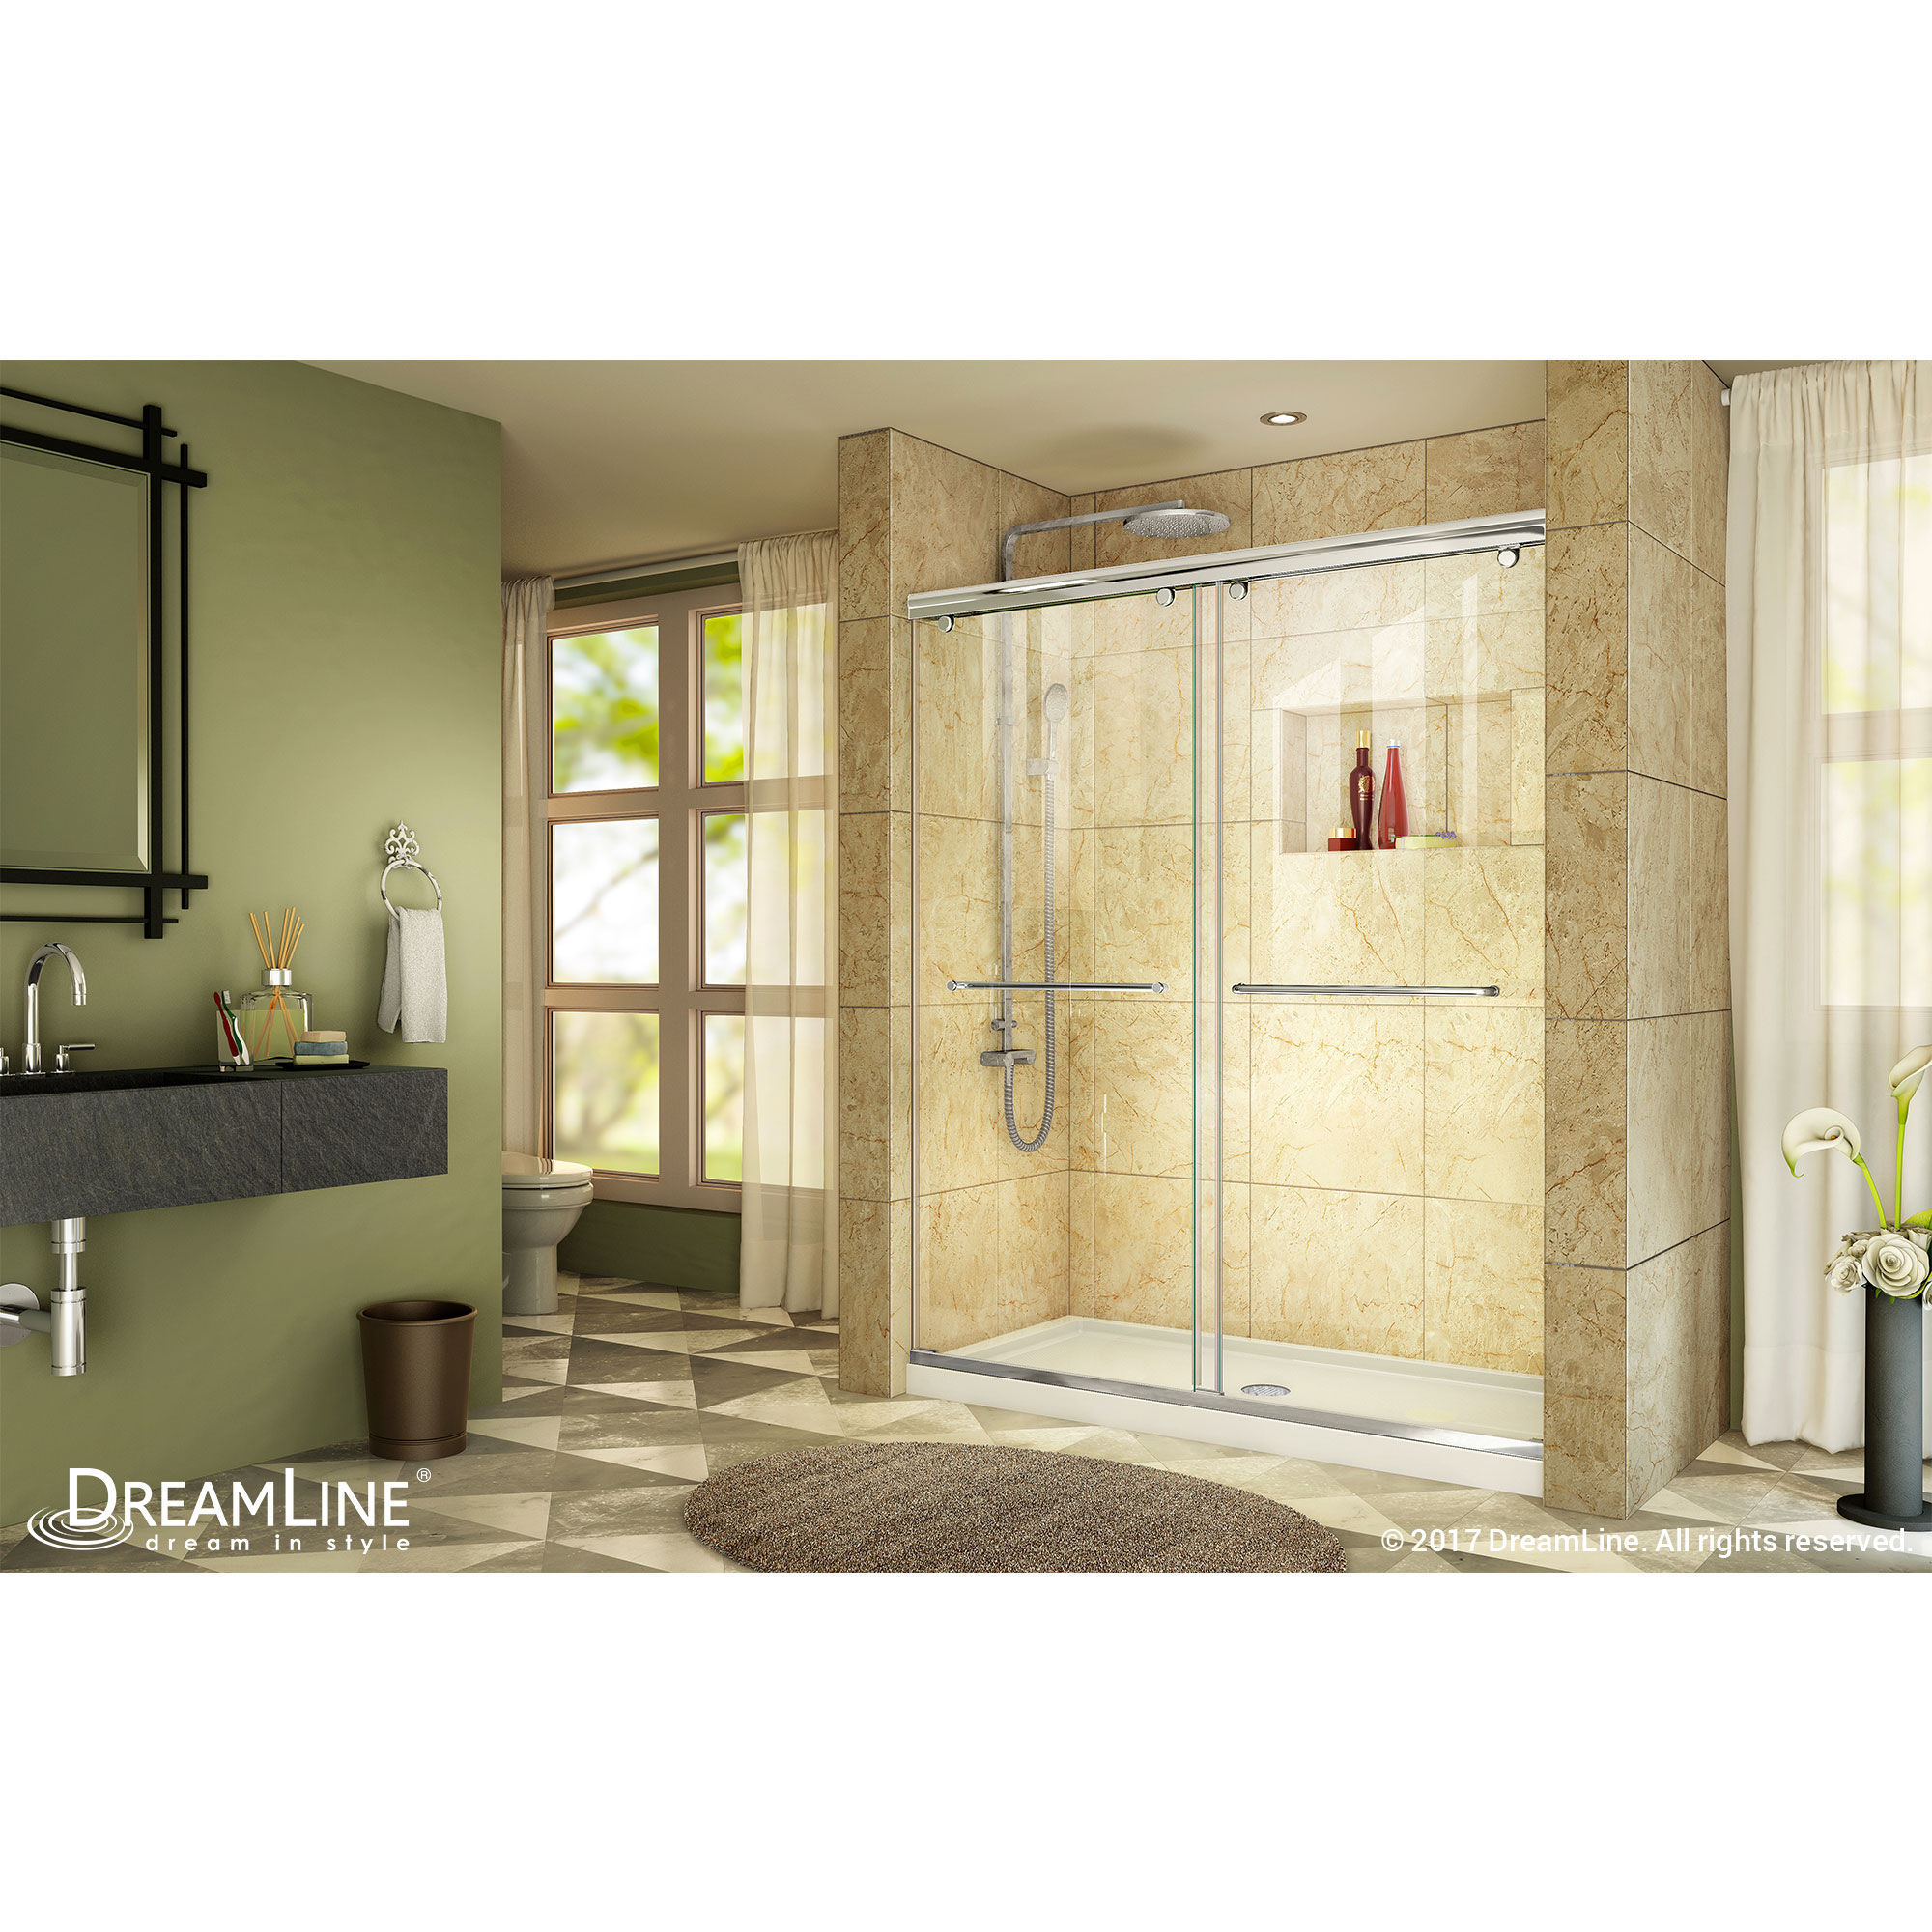 Charisma Frameless Bypass Sliding Shower Door & SlimLine 36" by 60" Shower Base